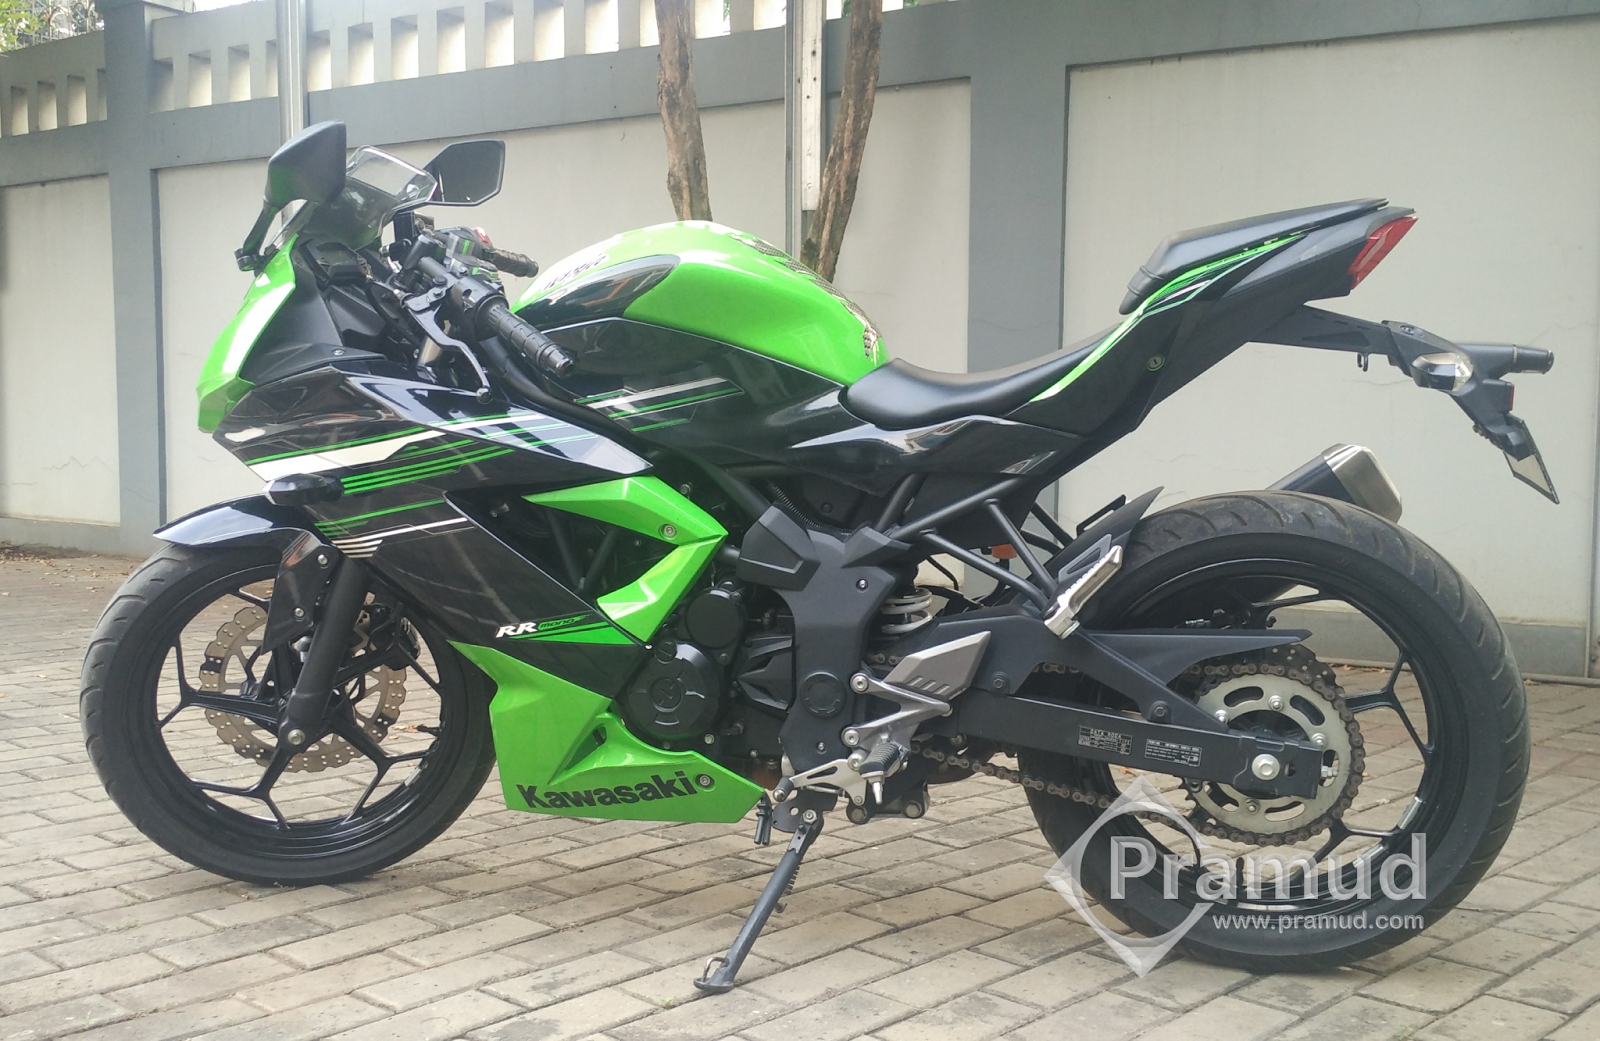 Review Kawasaki Ninja 250sl 250rr Mono Selama 3 Tahun Pramud